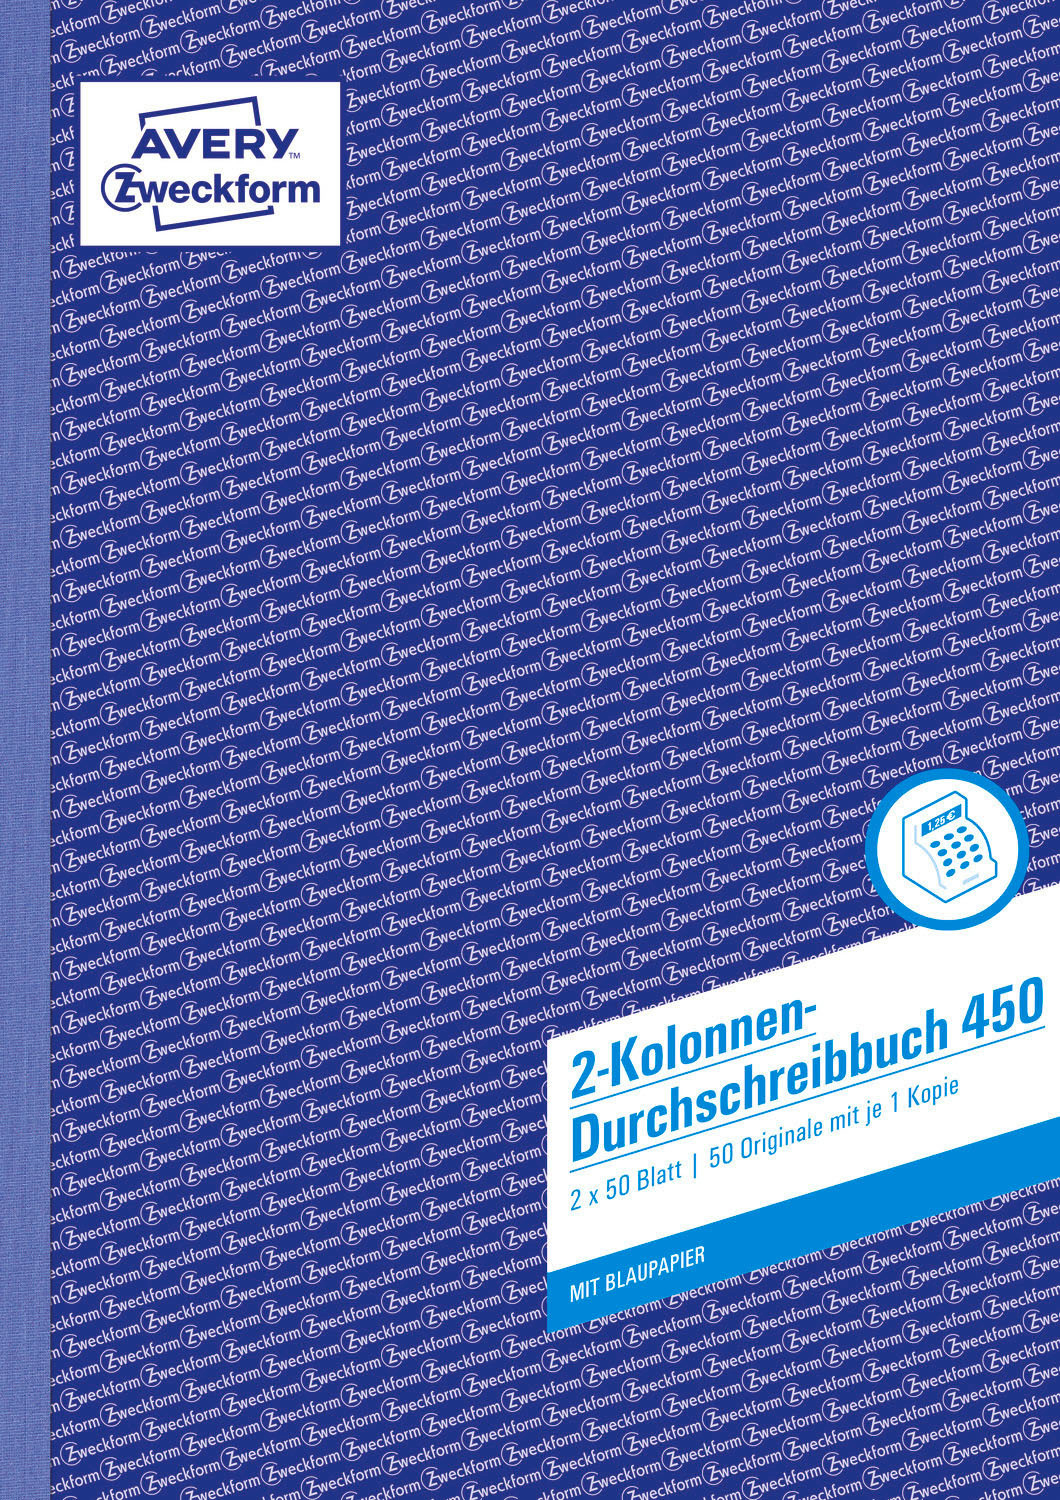 x 297 2x50 A4 ZWECKFORM Kolonnenbuch mm AVERY x 297 450 210 Blatt 210 mm